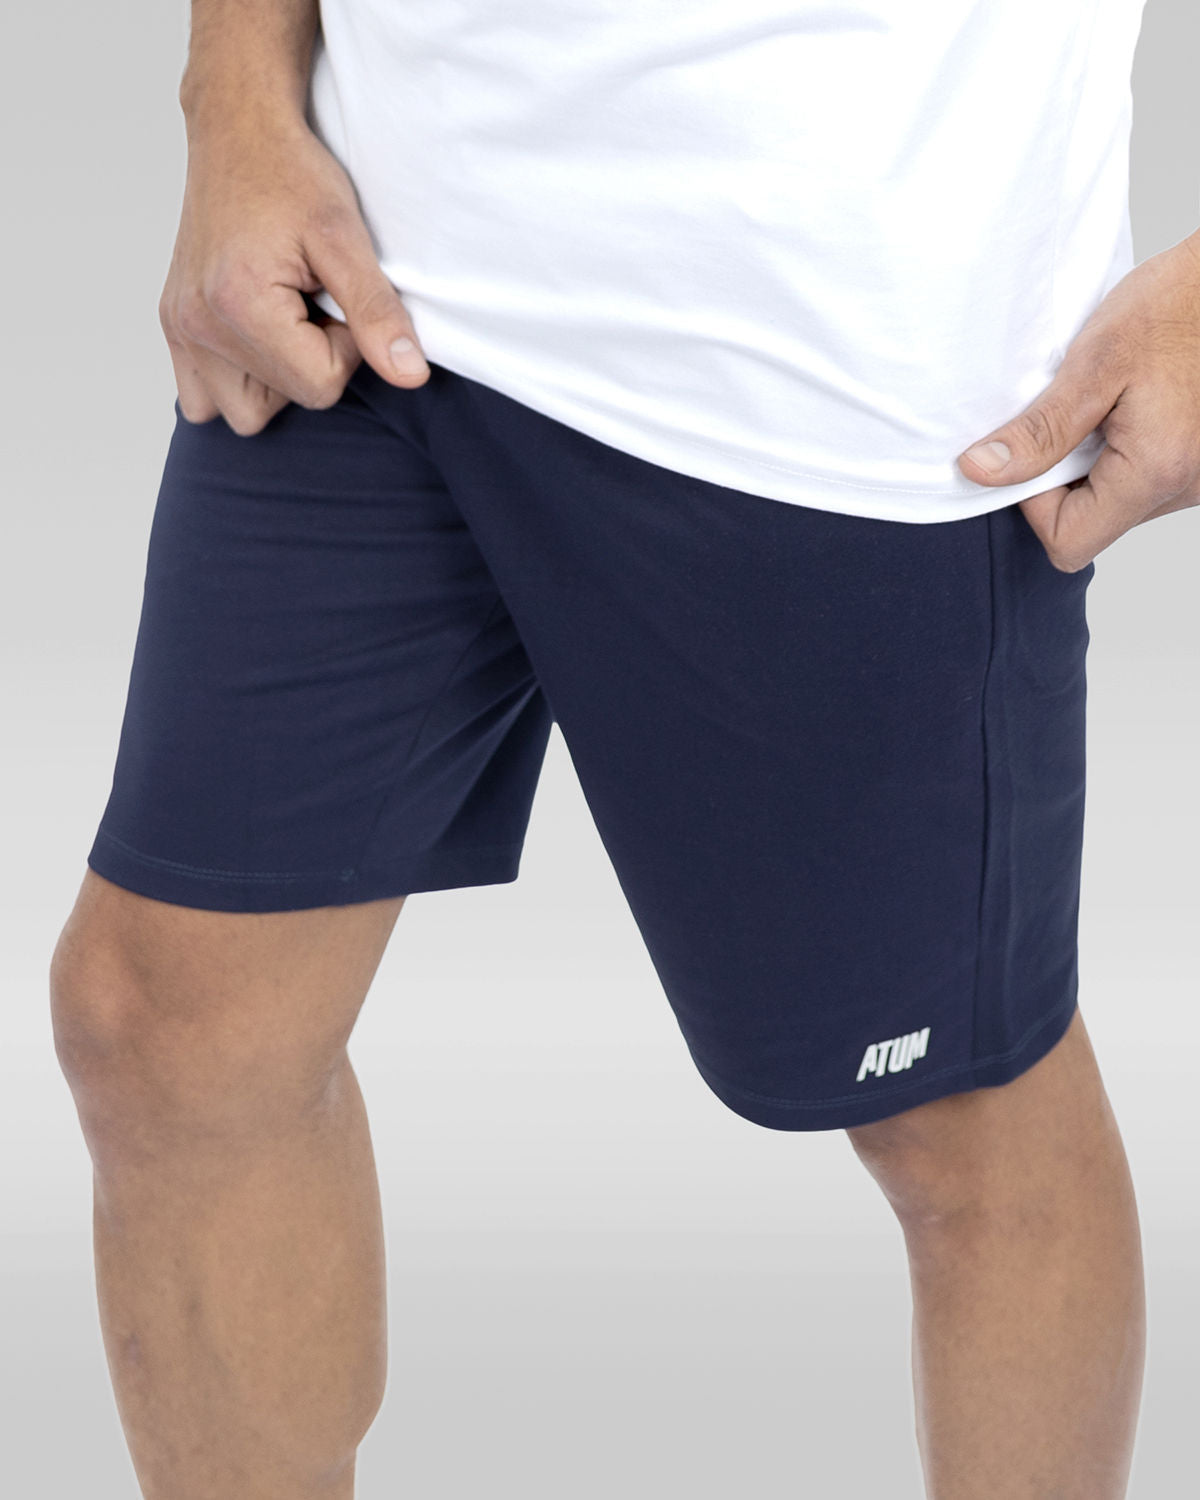 Atum men's Archi traning shorts